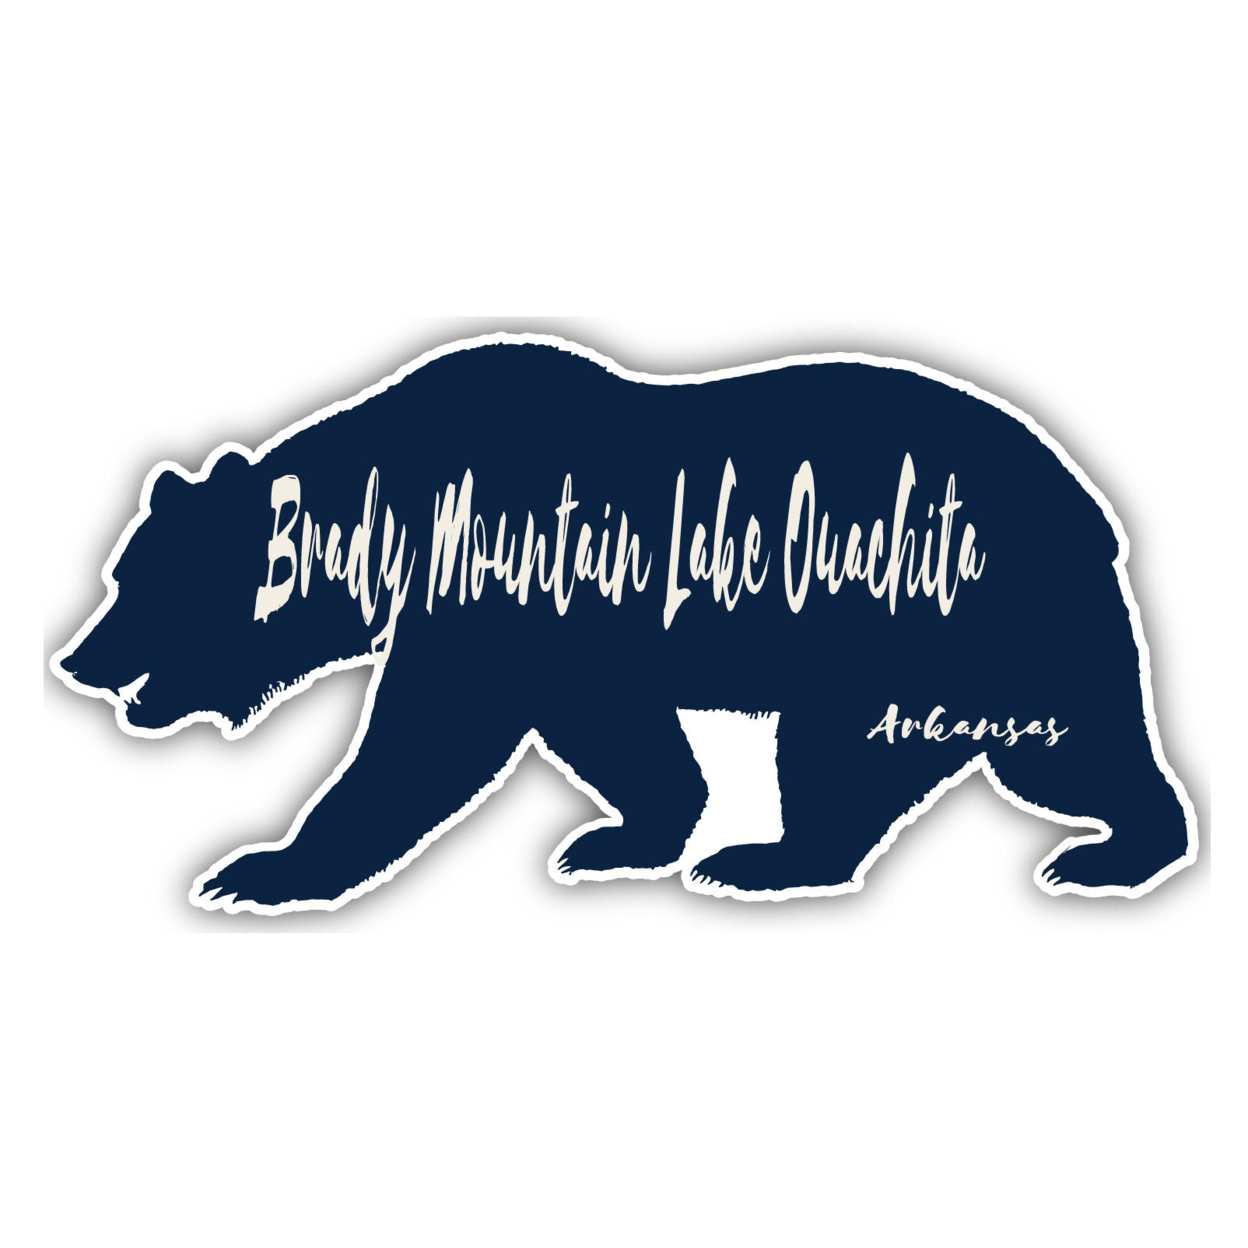 Brady Mountain Lake Ouachita Arkansas Souvenir Decorative Stickers (Choose Theme And Size) - Single Unit, 6-Inch, Tent